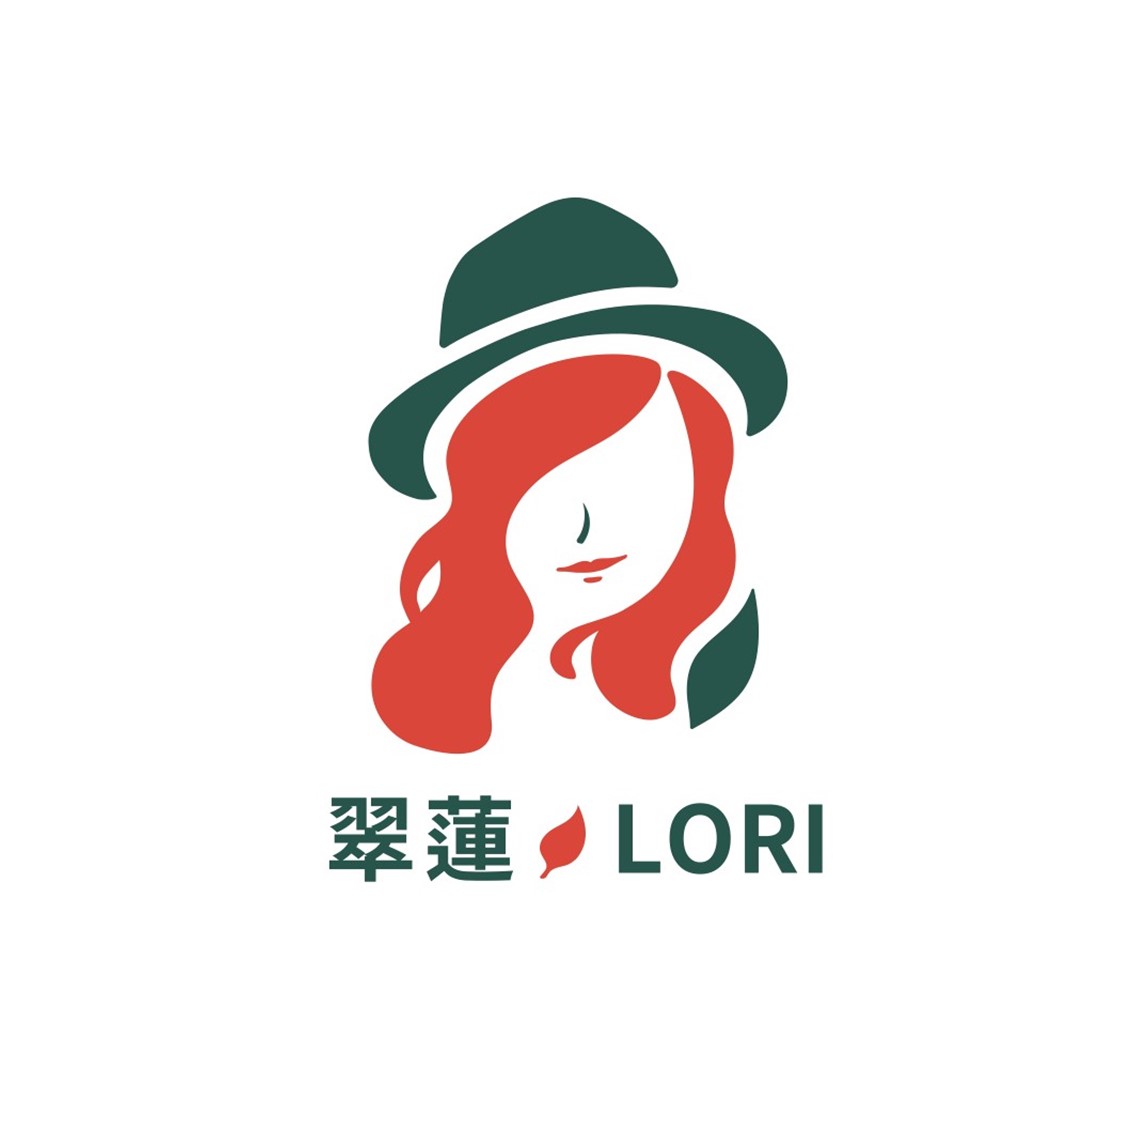 翠蓮原味生活館 Logo